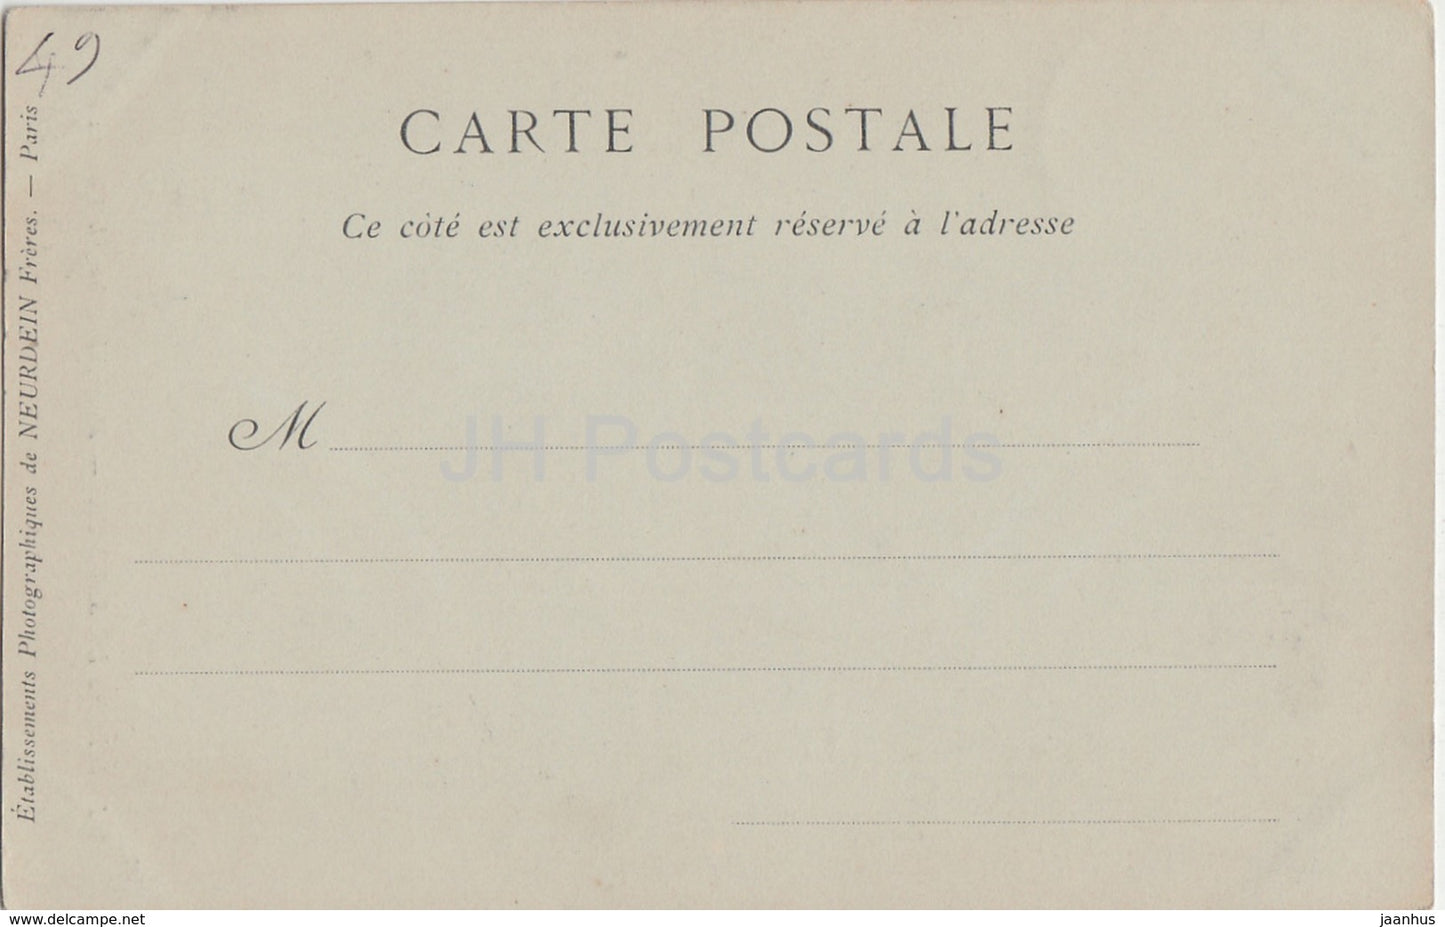 Environs des Saumur - Montreuil Bellay - Le Chateau - castle - old postcard - France - unused